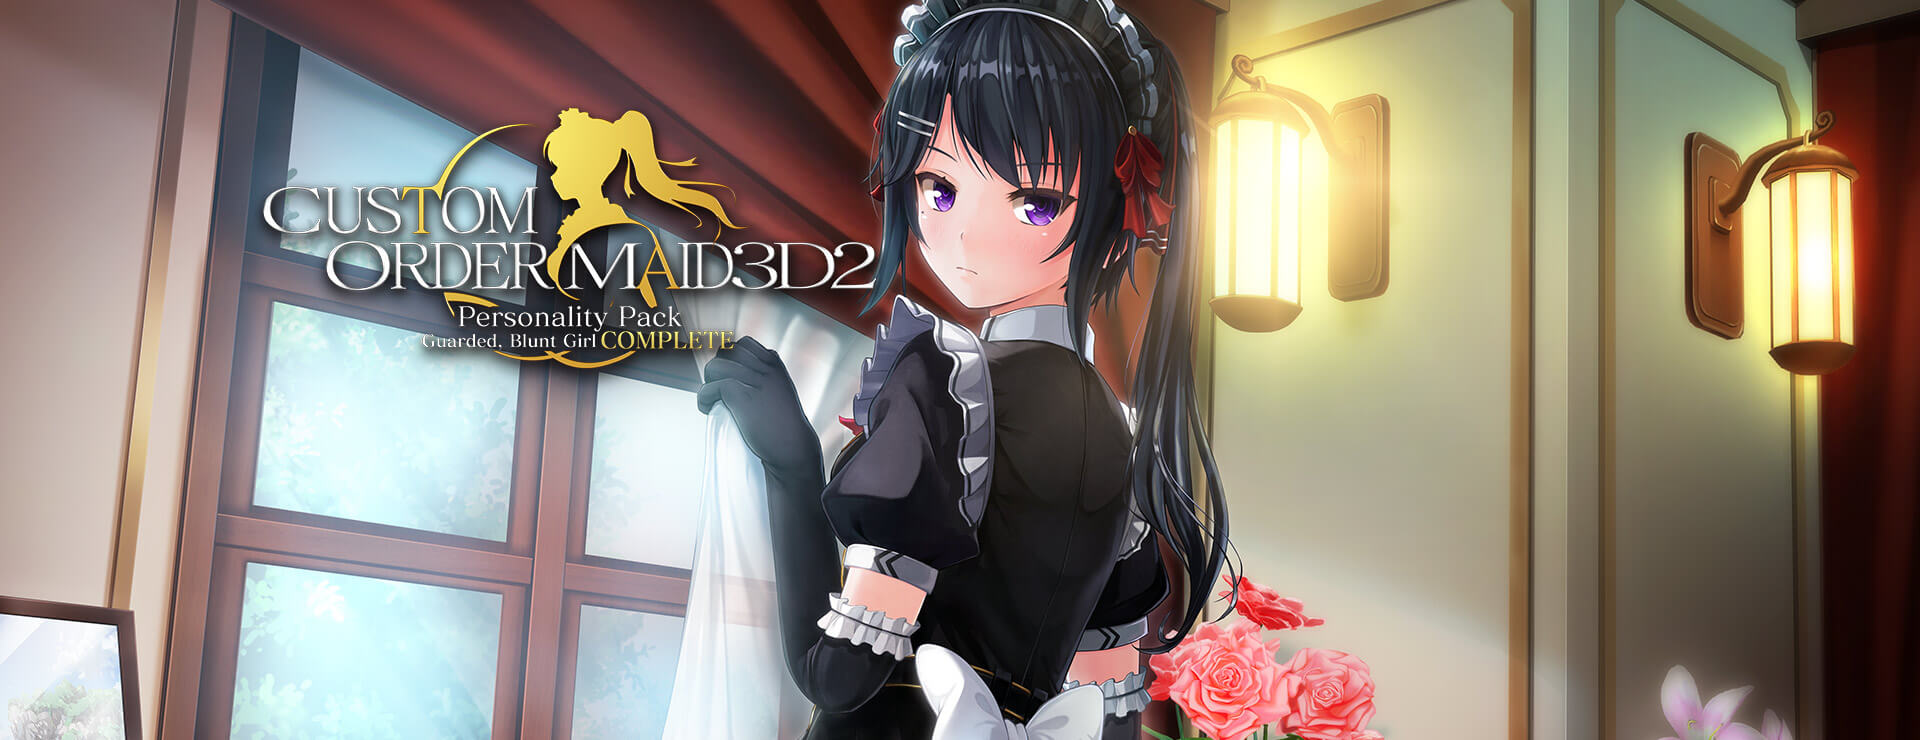 Custom Order Maid 3D2 Guarded, Blunt Girl Complete Bundle - Simulation Jeu